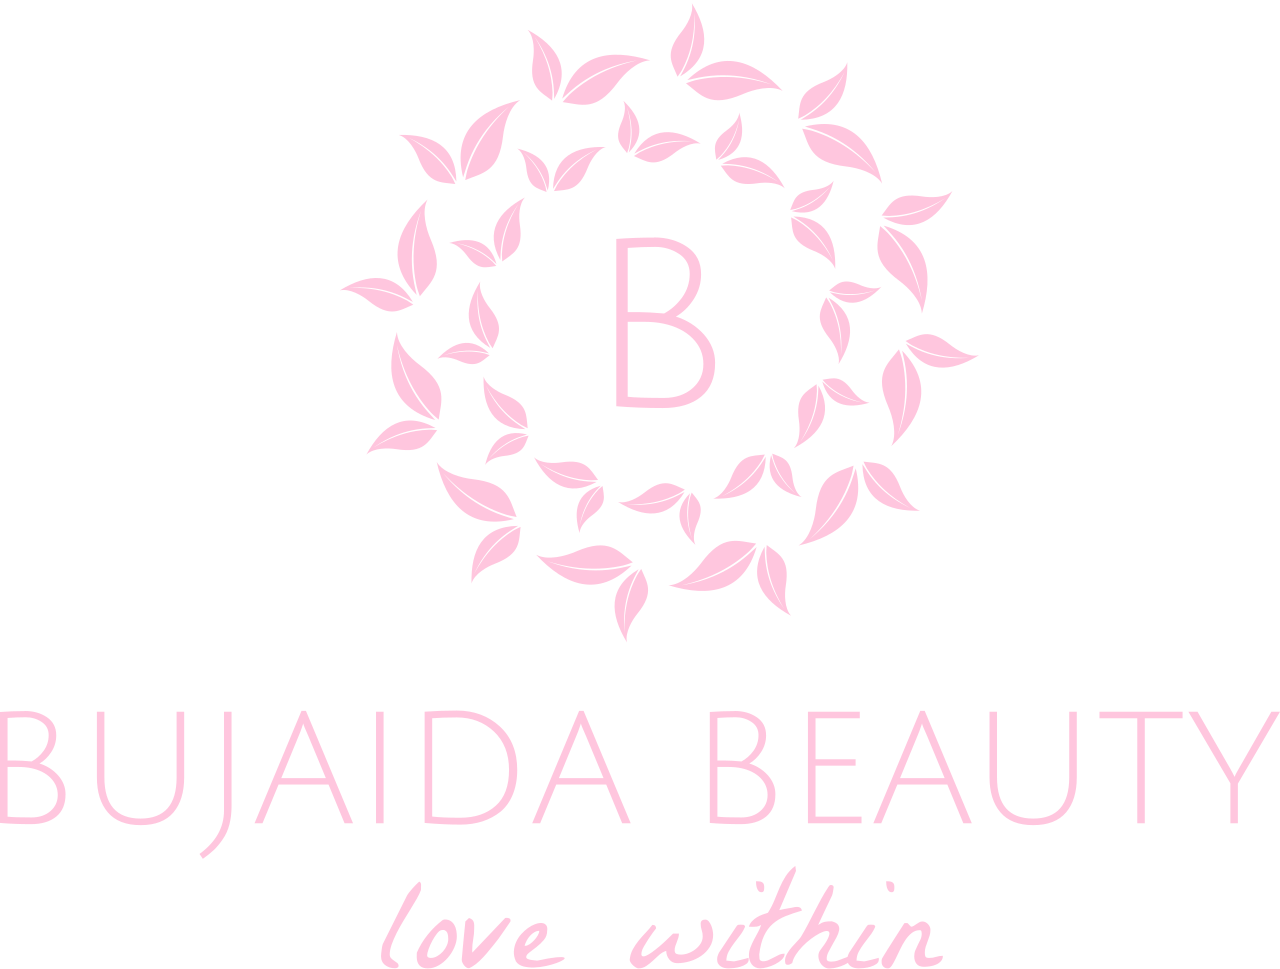 BUJAIDA BEAUTY 's logo